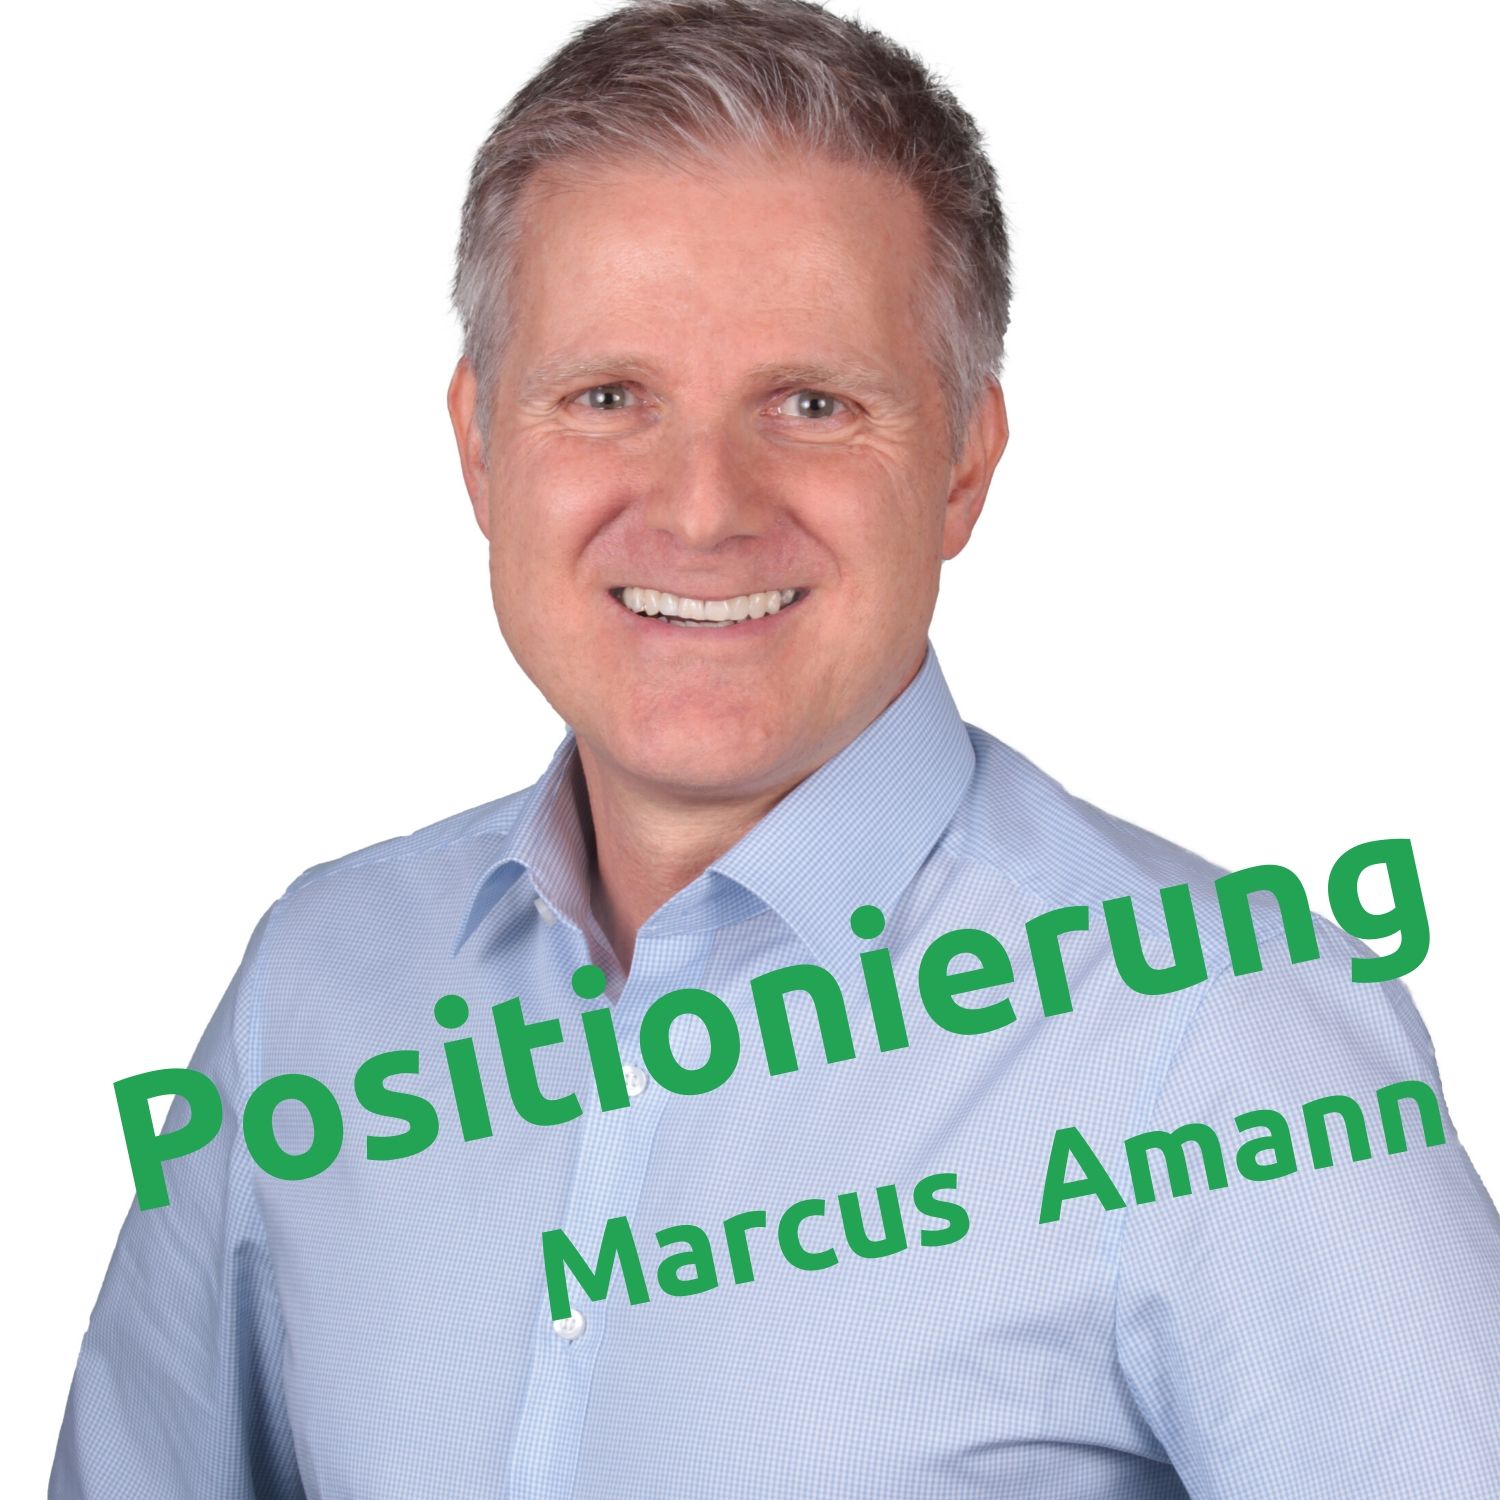 Interview mit Marcus Amann - Positionierung